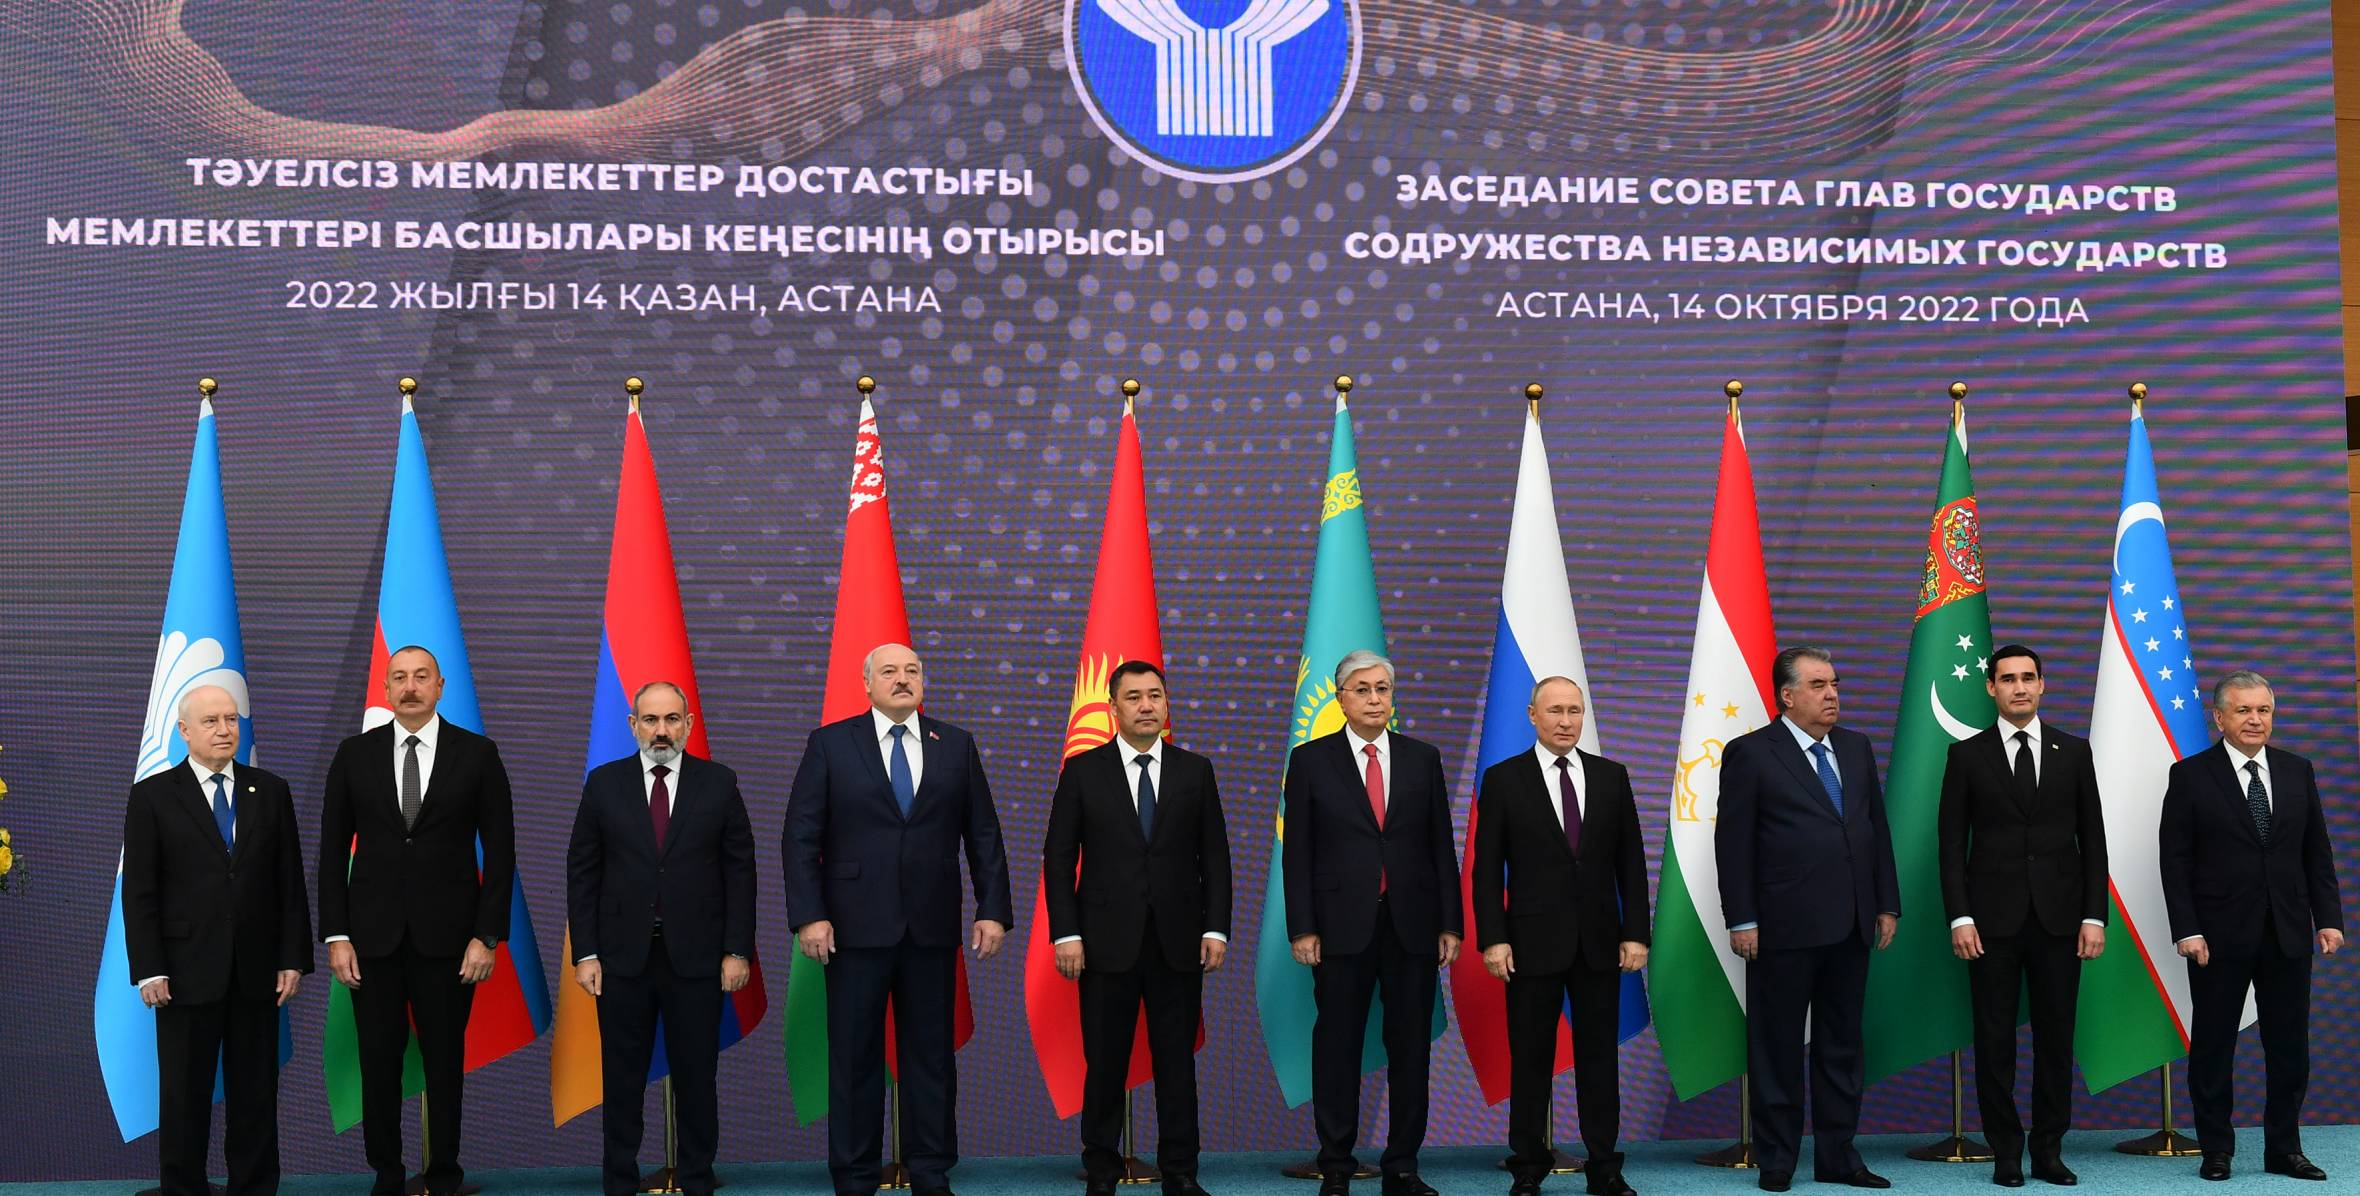 Ильхам Алиев принял участие в заседании Совета глав государств СНГ в Астане